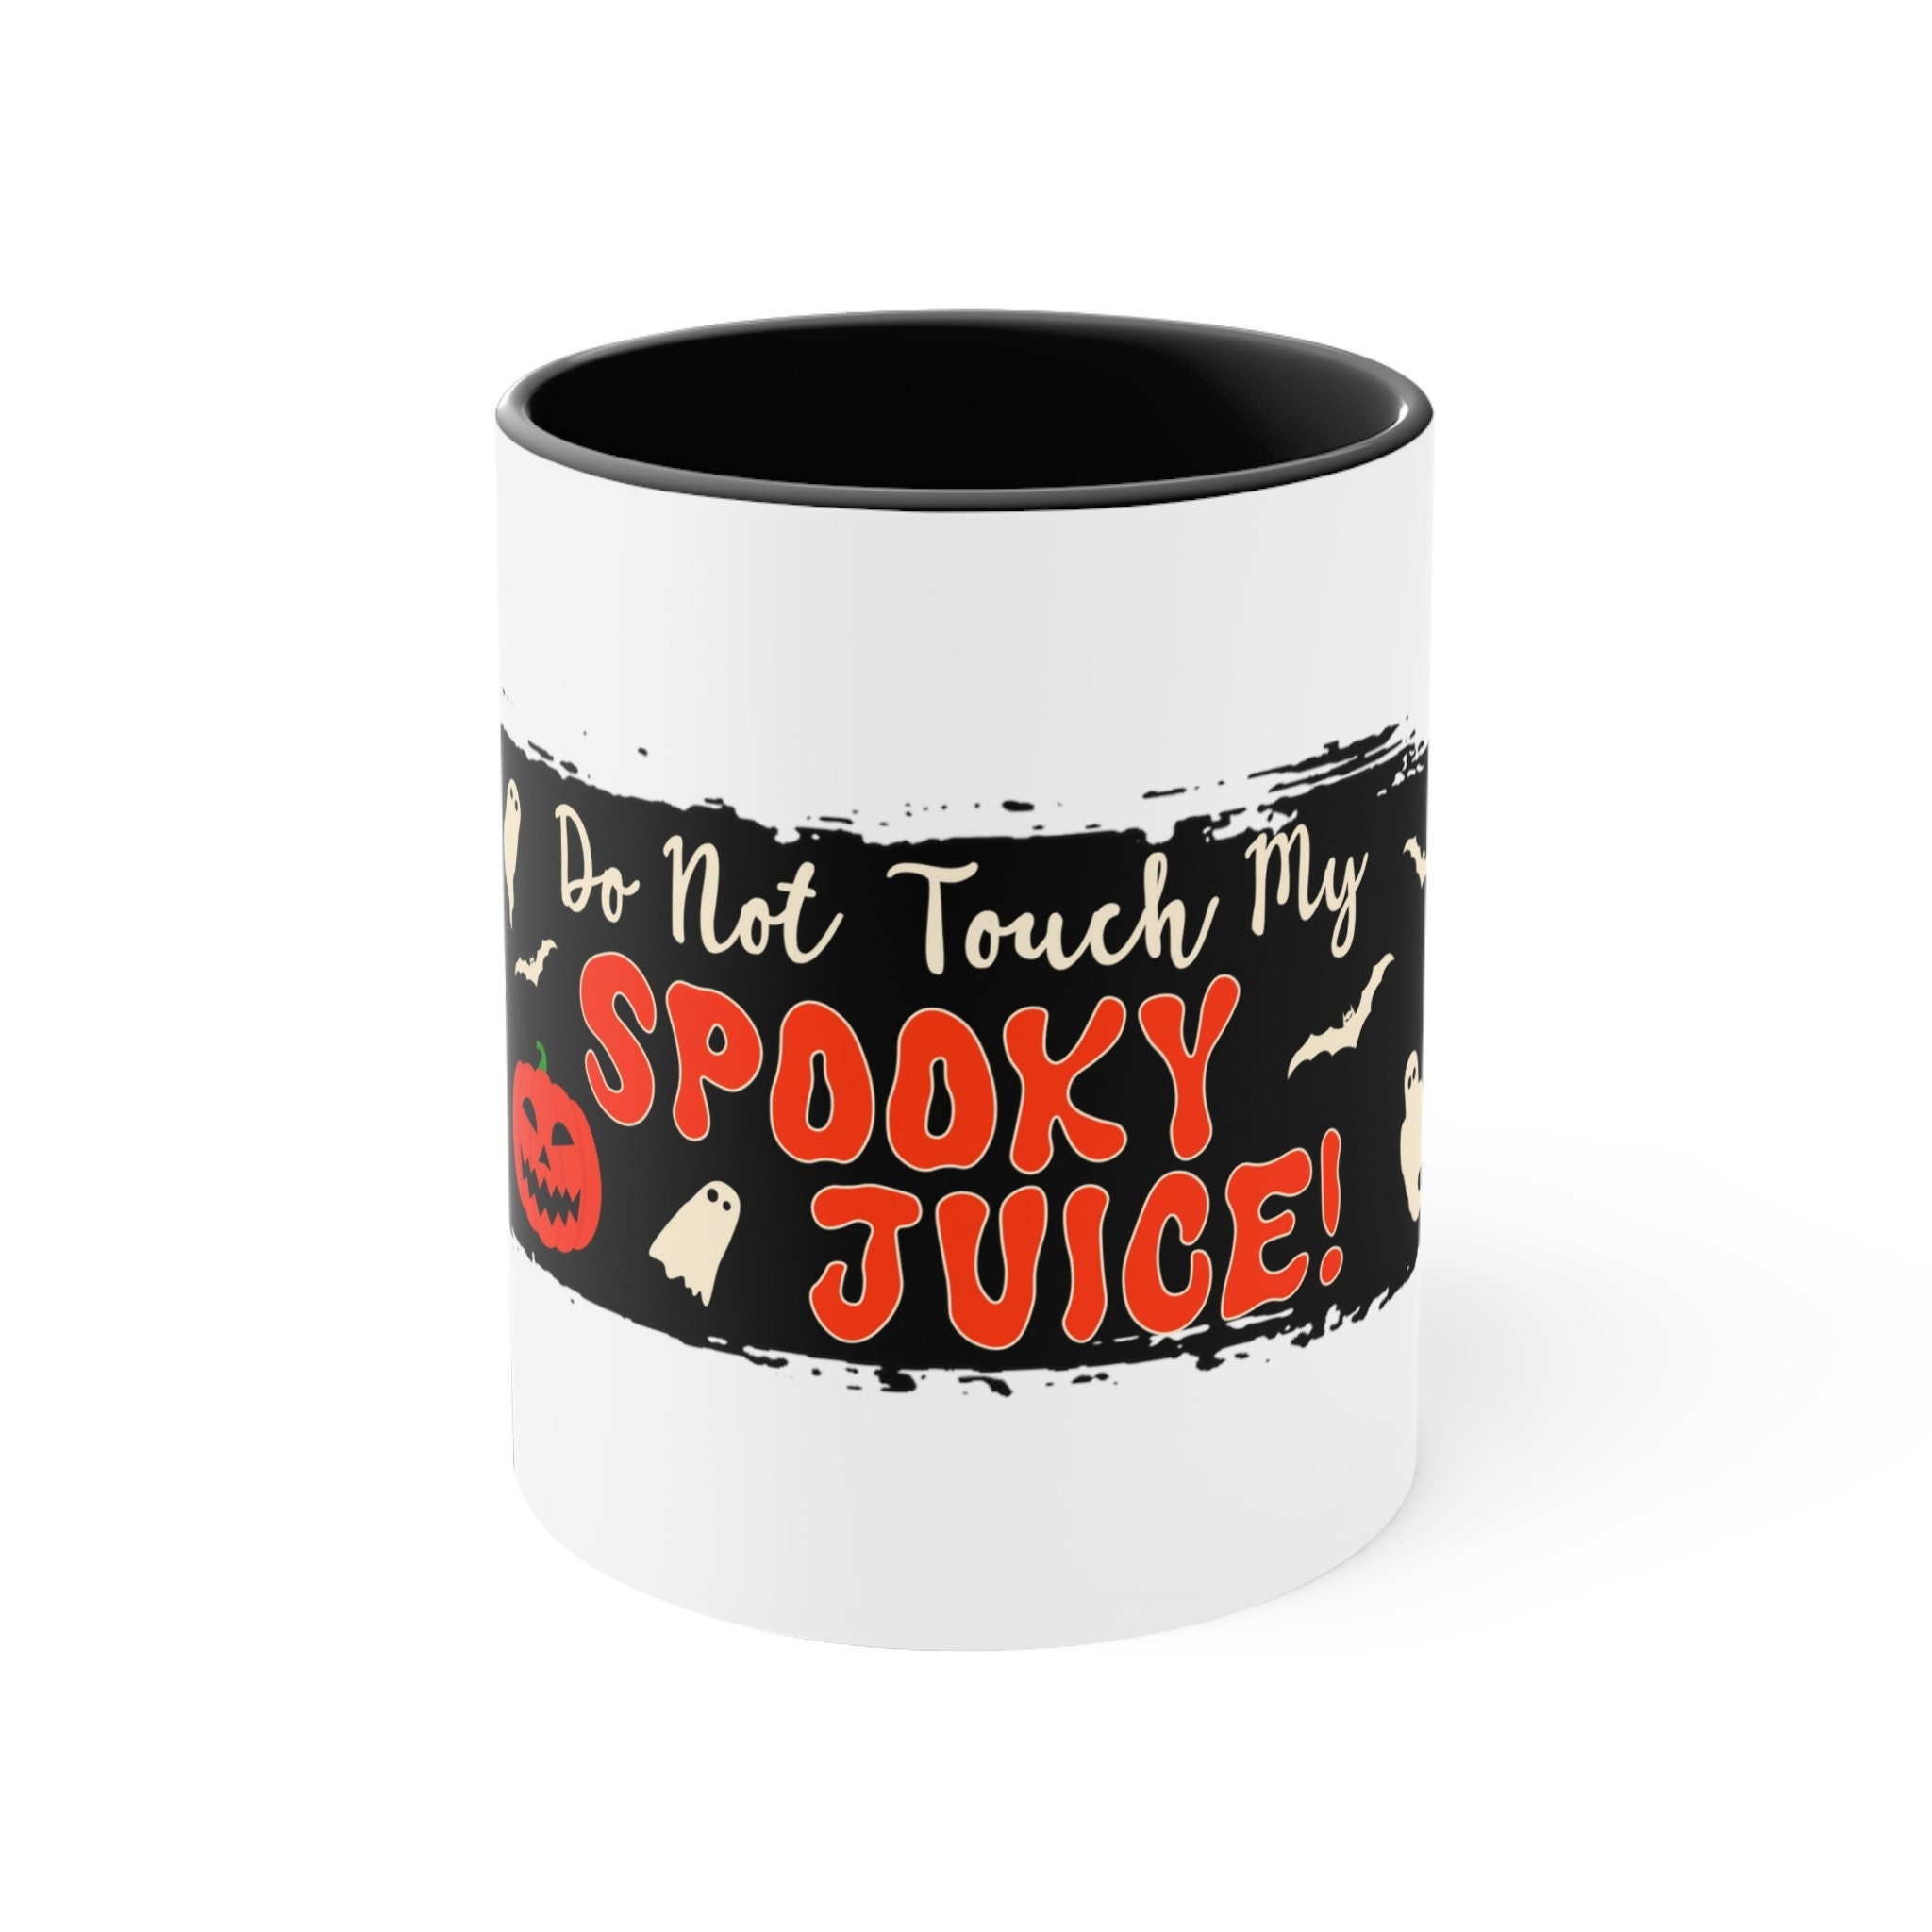 Touch My Tea Grinch Cup, 11 oz Coffee Mug, A57